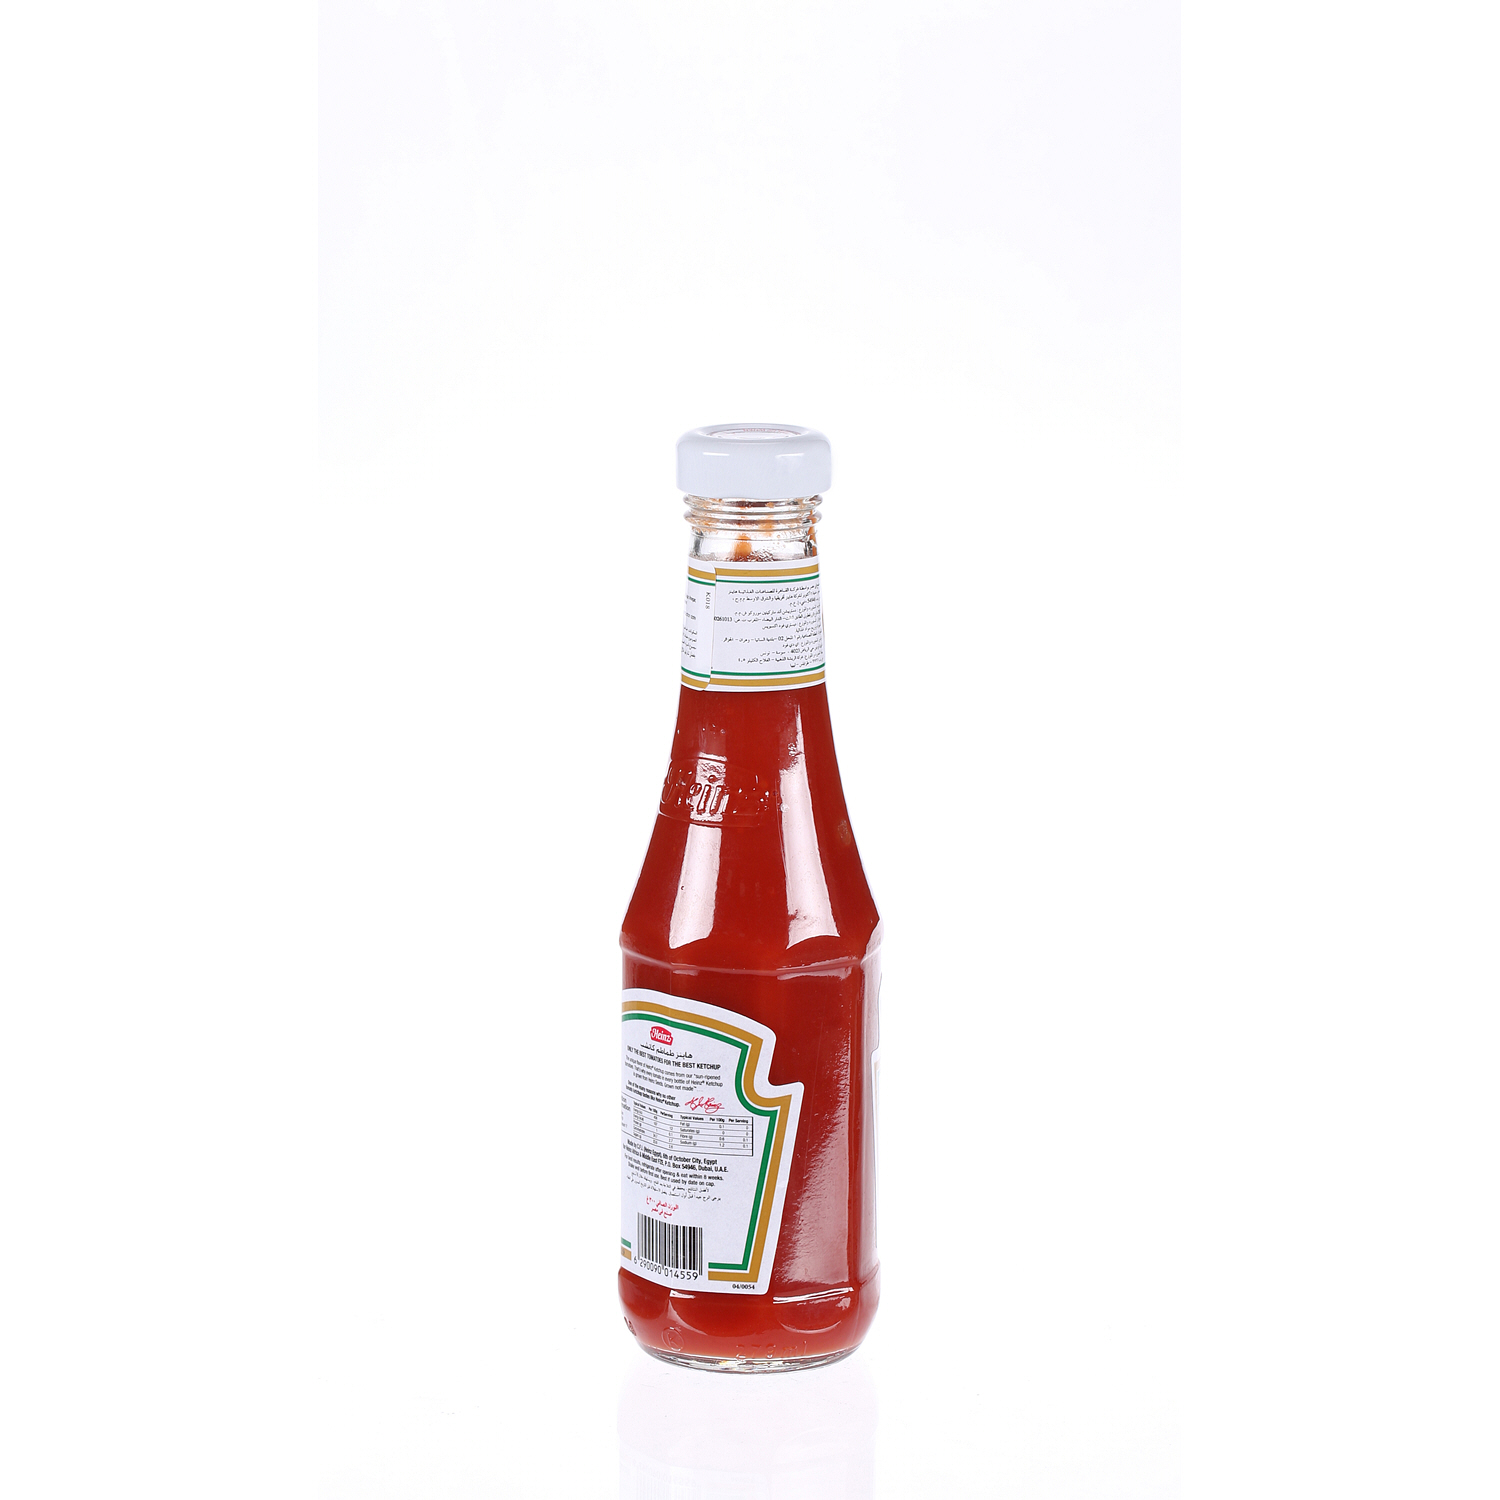 Heinz Tomato Ketchup 300gm